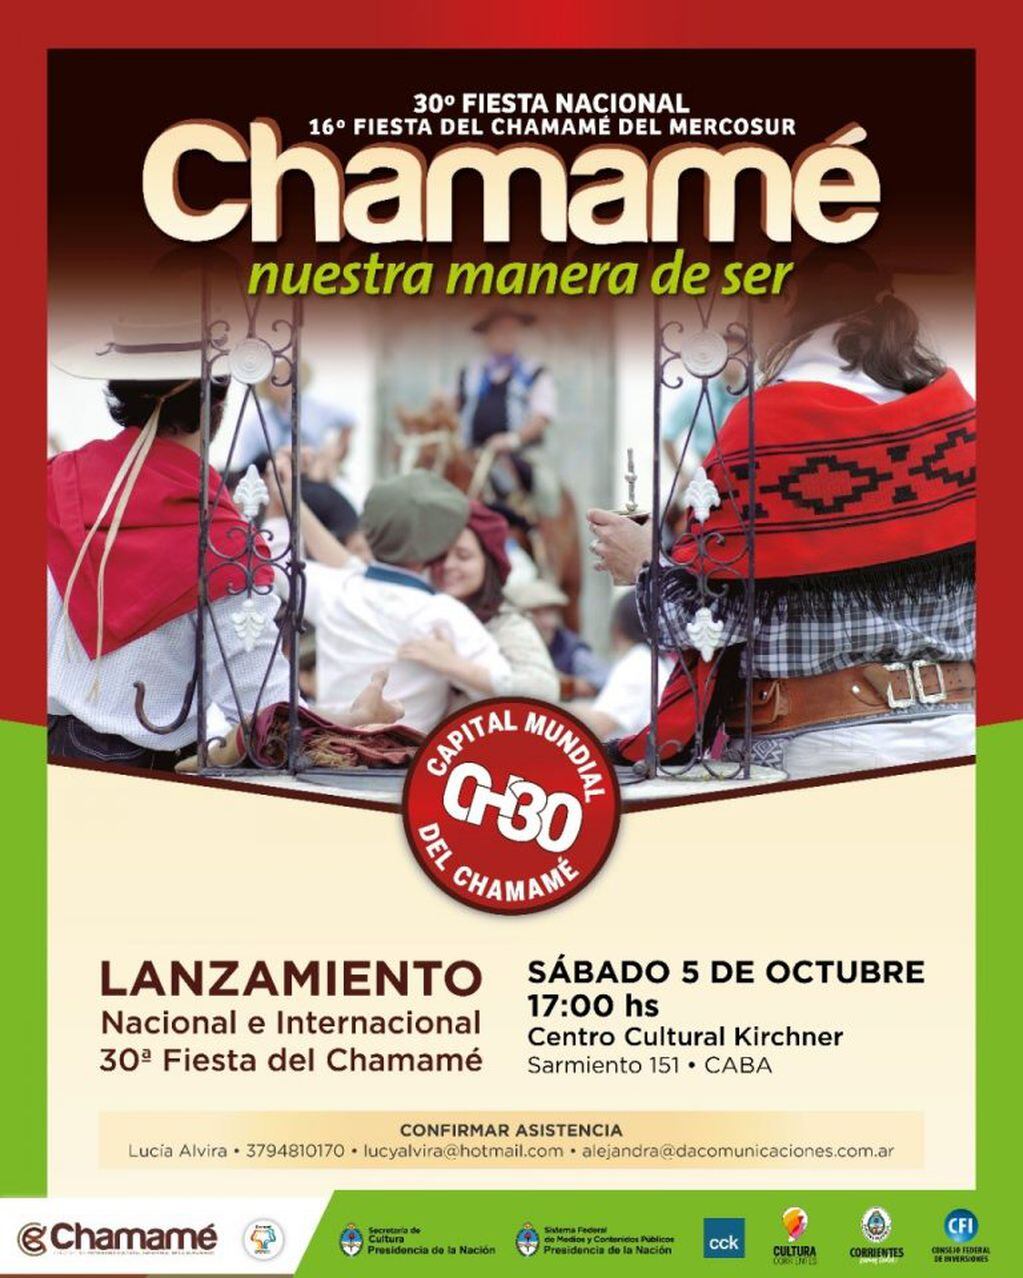 Lanzamiento de la Fiesta Nacional del Chamamé